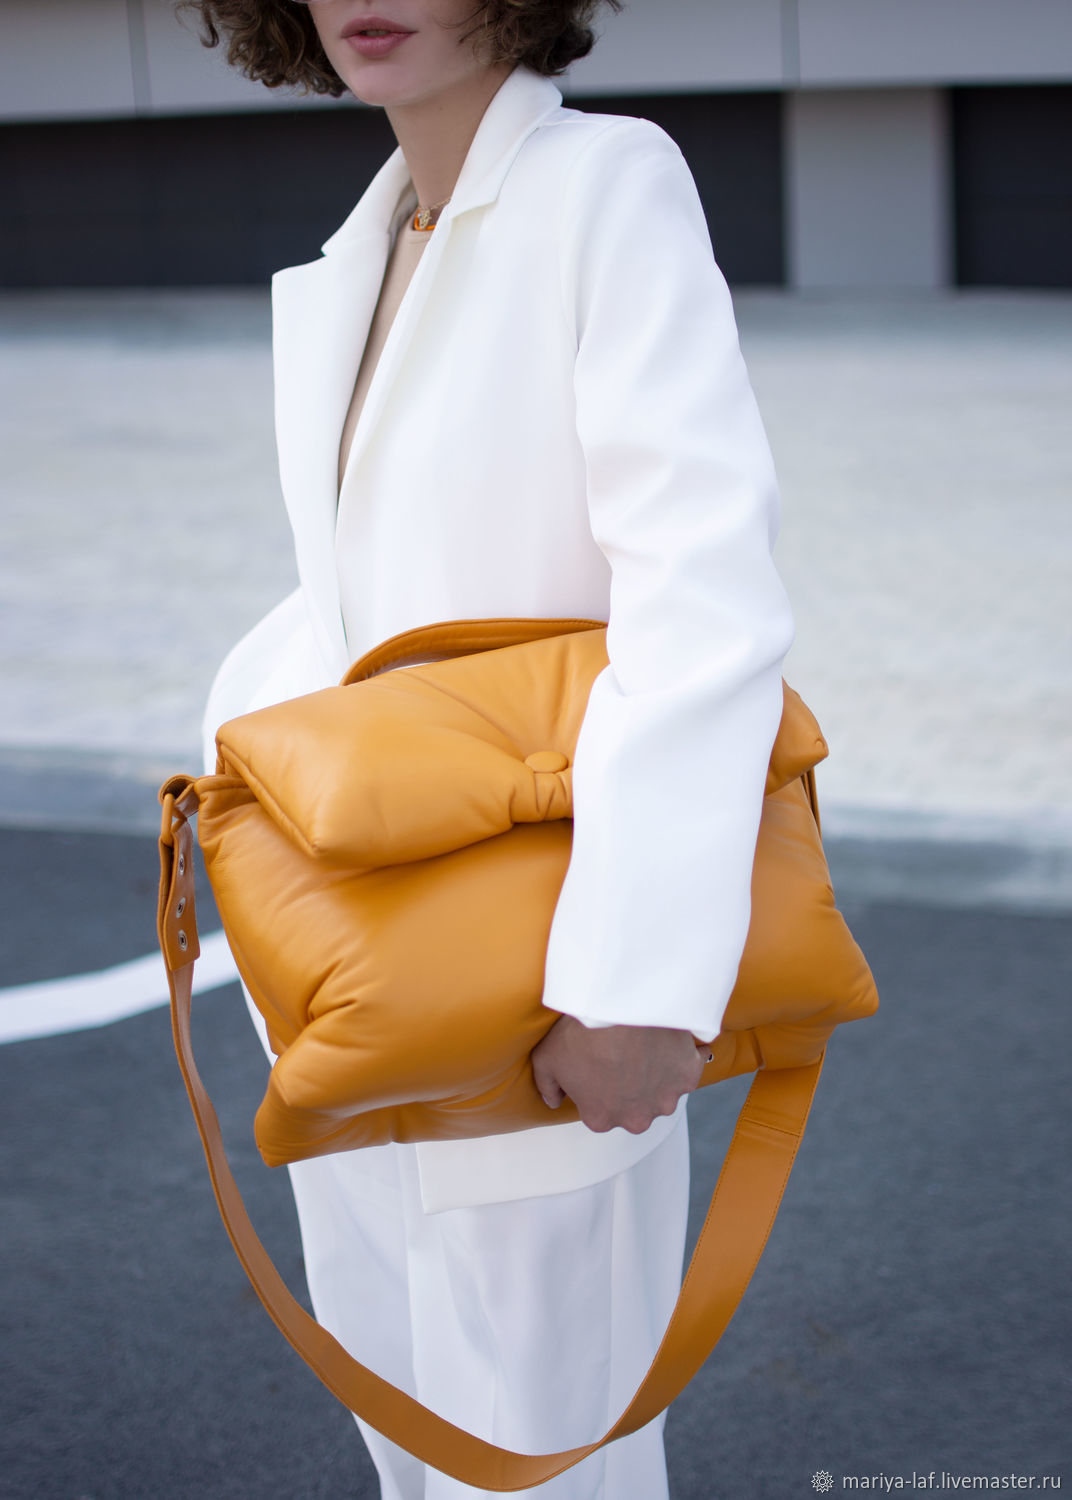 Многофункциональная сумка-подушка Céline | Сумки, Стёганая сумка, Кожаные сумки